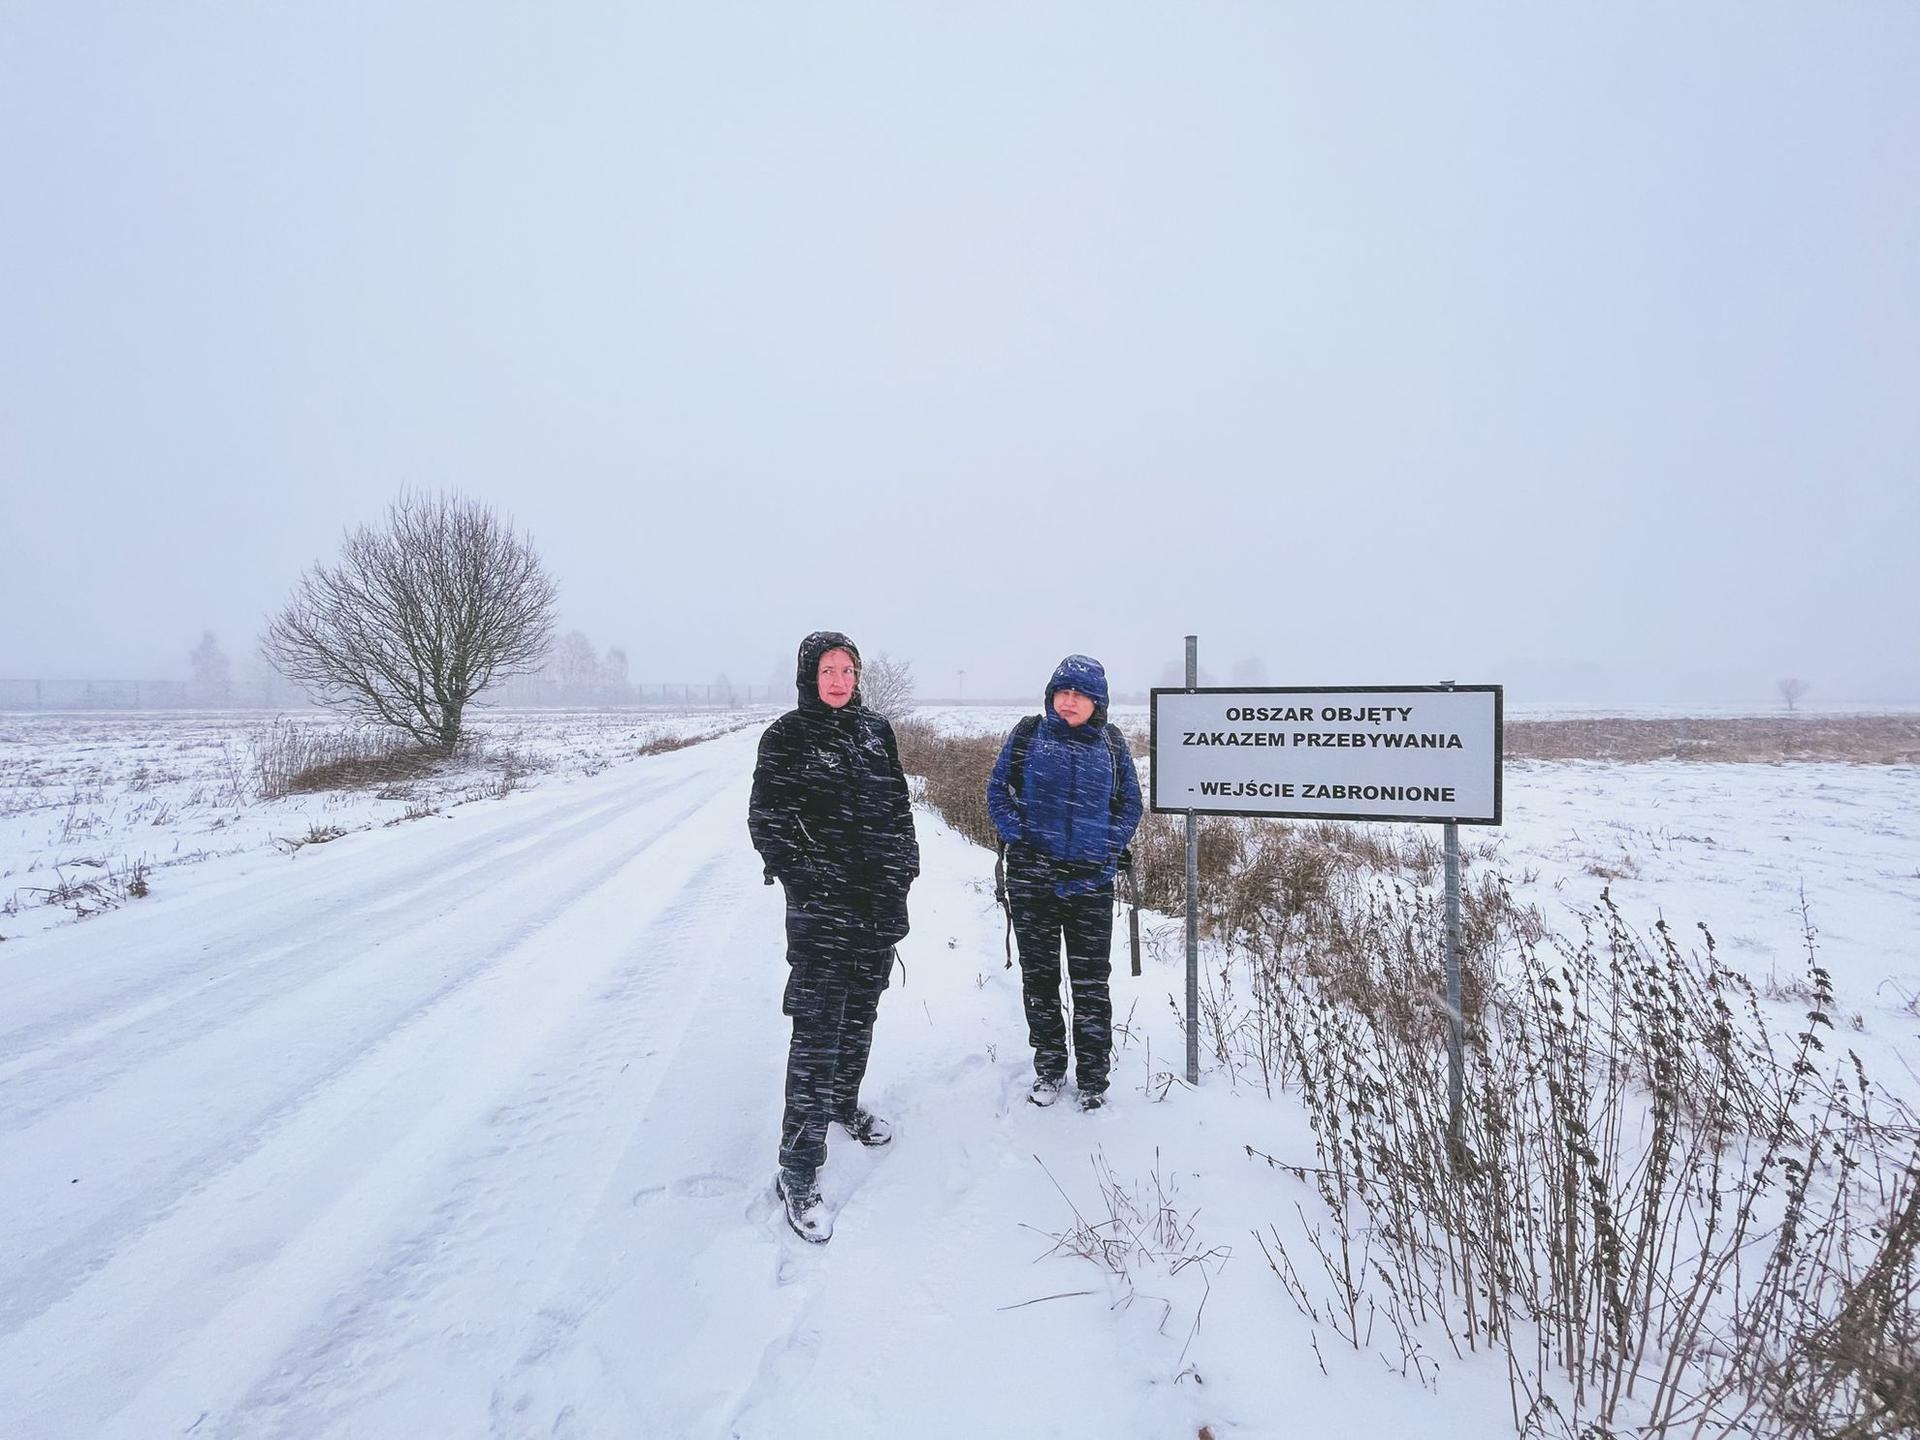 Marta și Regina, lângă semnul care indică faptul că te afli la 200 de metri de Belarus și, dincolo de el, e interzis să pășești